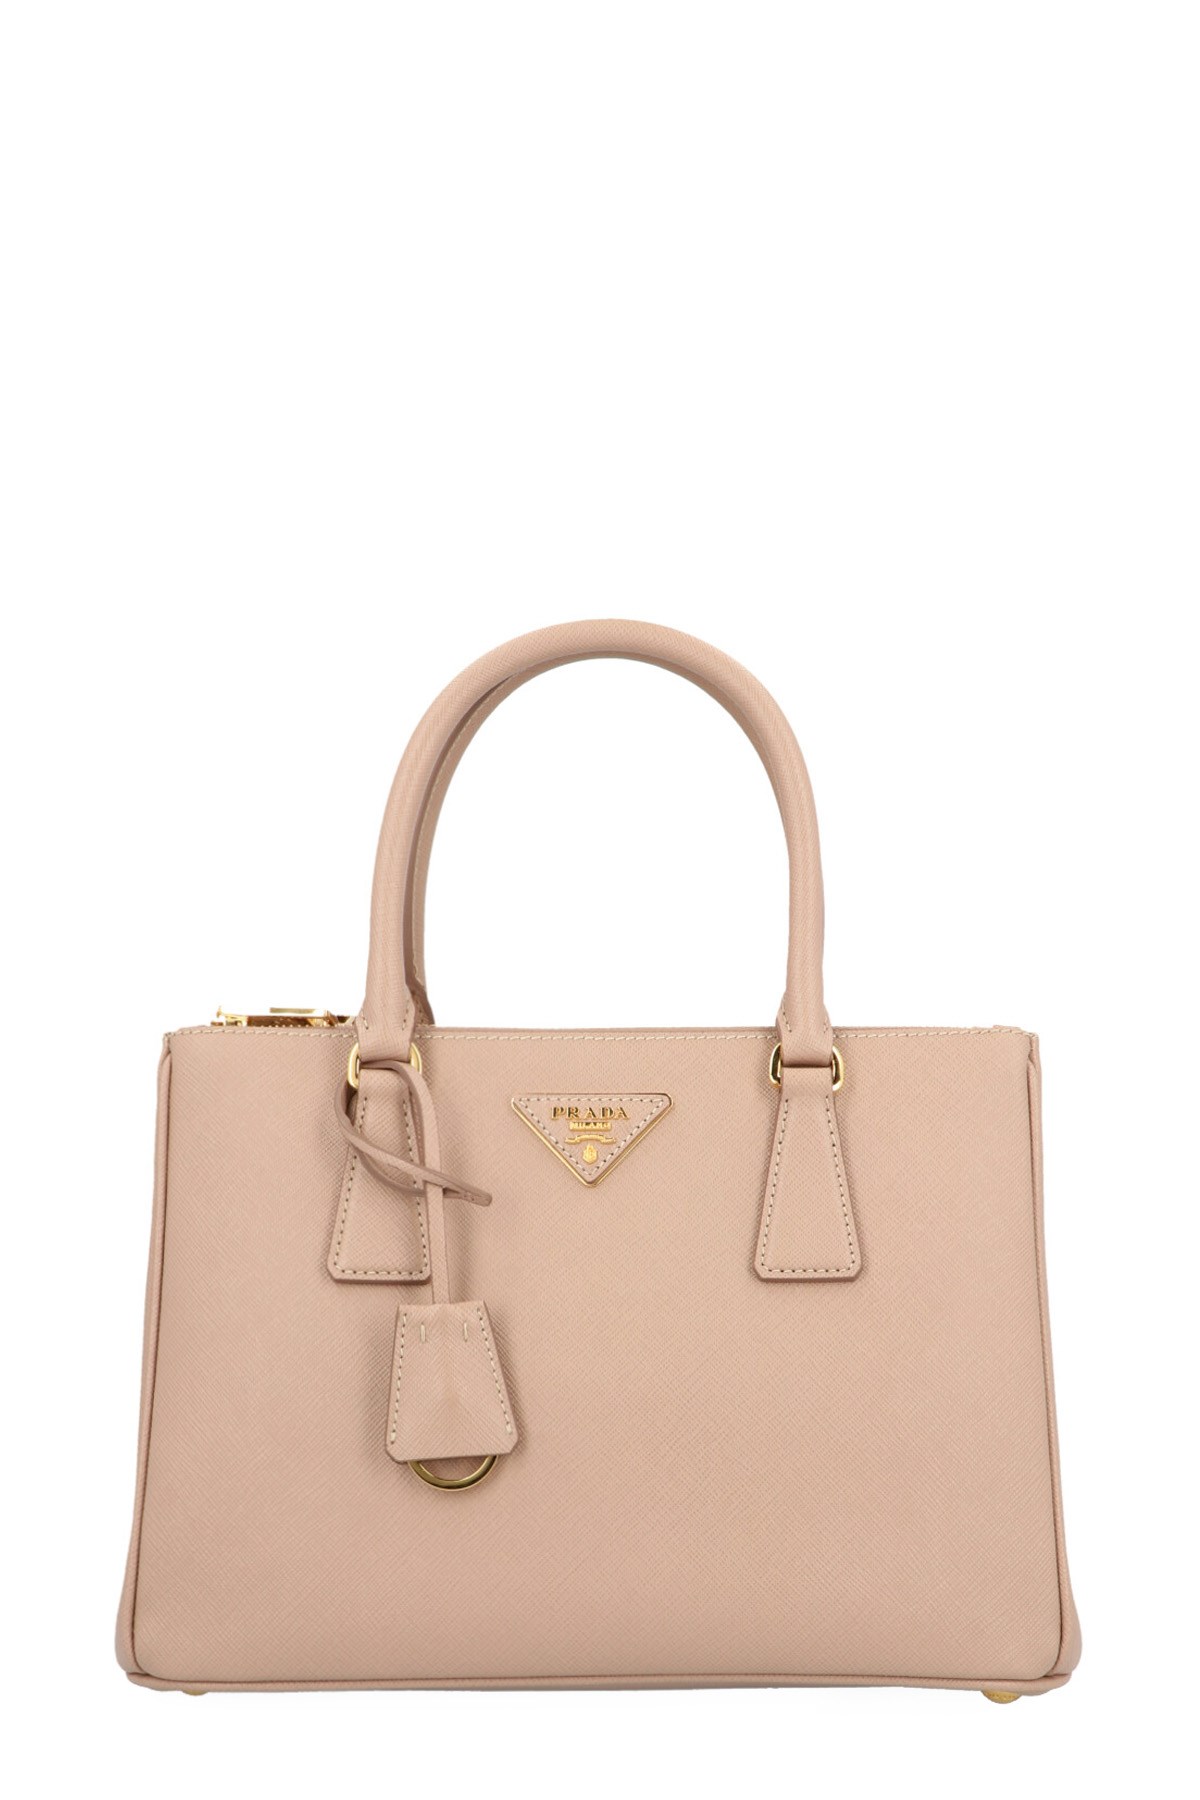 PRADA 'Galleria' Small Handbag